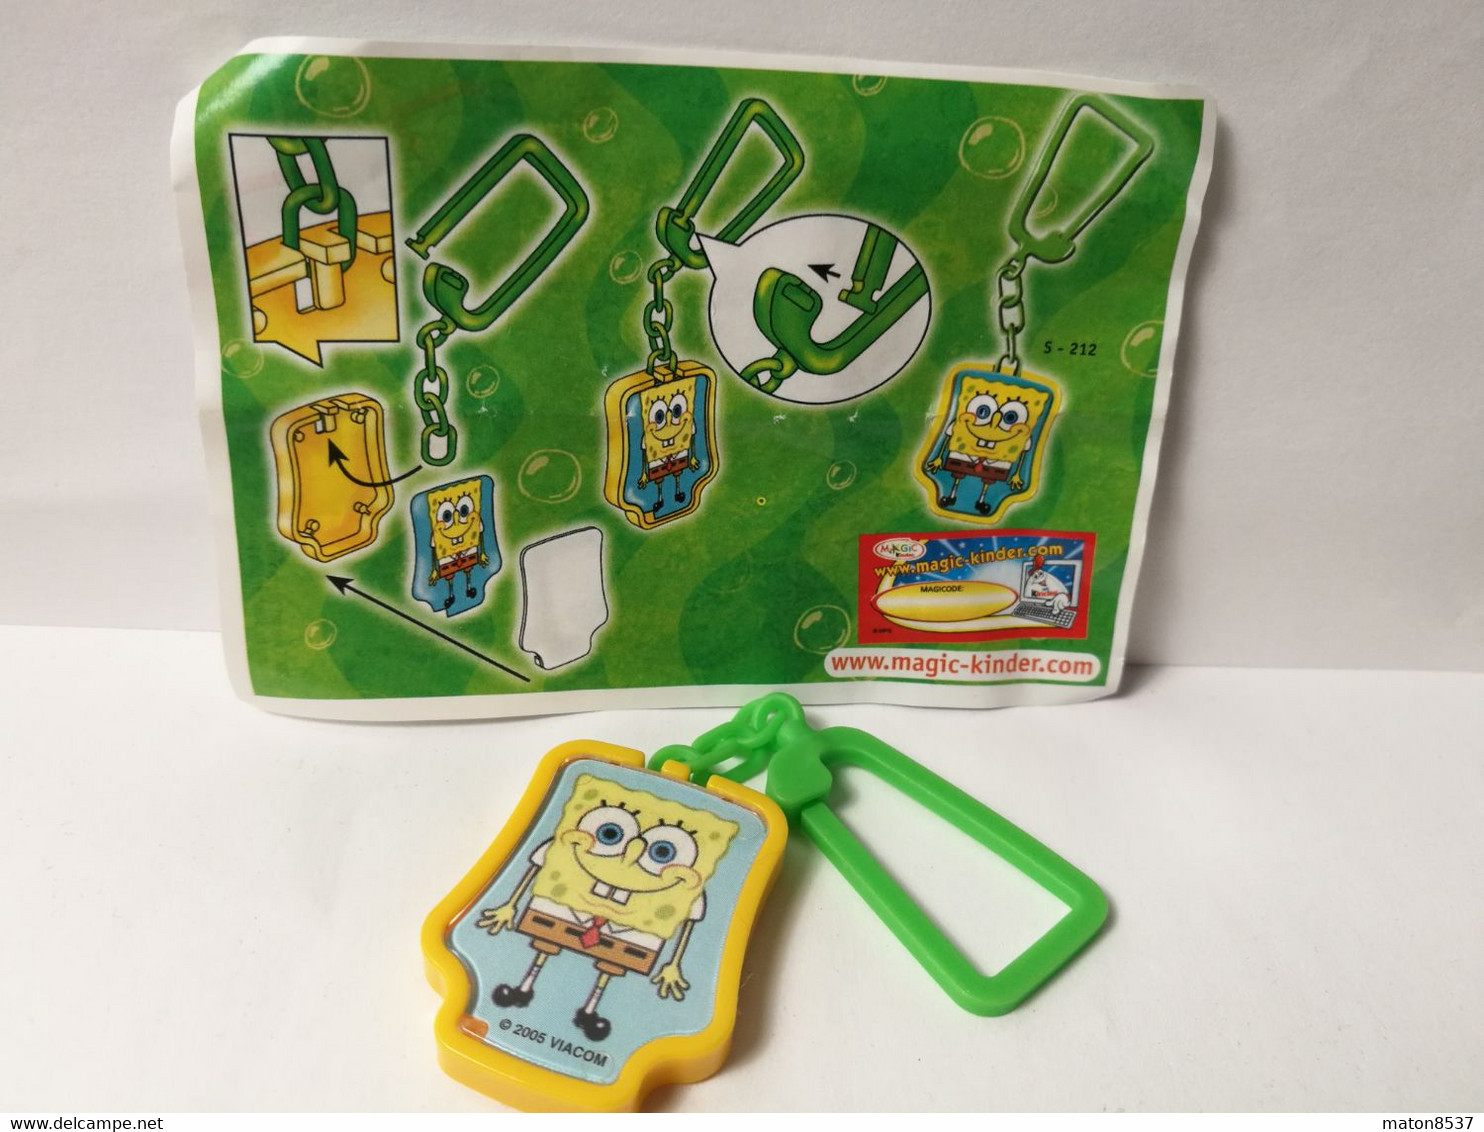 Kinder :  MPG S-212  SpongeBob Schwammkopf 2005 - SpongeBob Schlüsselanhänger  + BPZ - Monoblocs